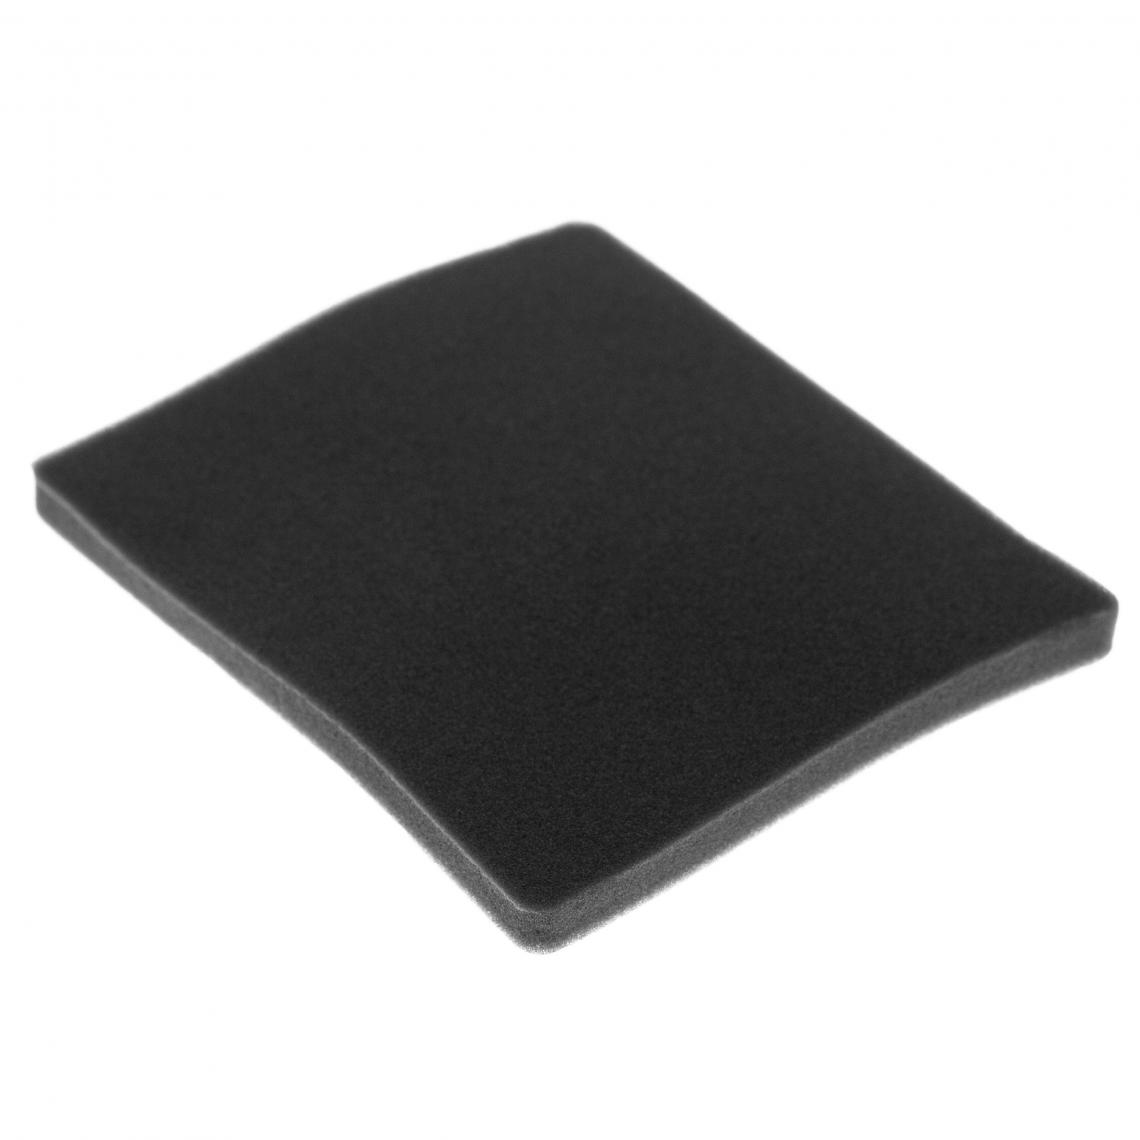 Vhbw - vhbw Filtre compatible avec Electrolux ZAM6210 (910288769) aspirateur - filtre de sortie d'air (filtre éponge), noir - Accessoire entretien des sols